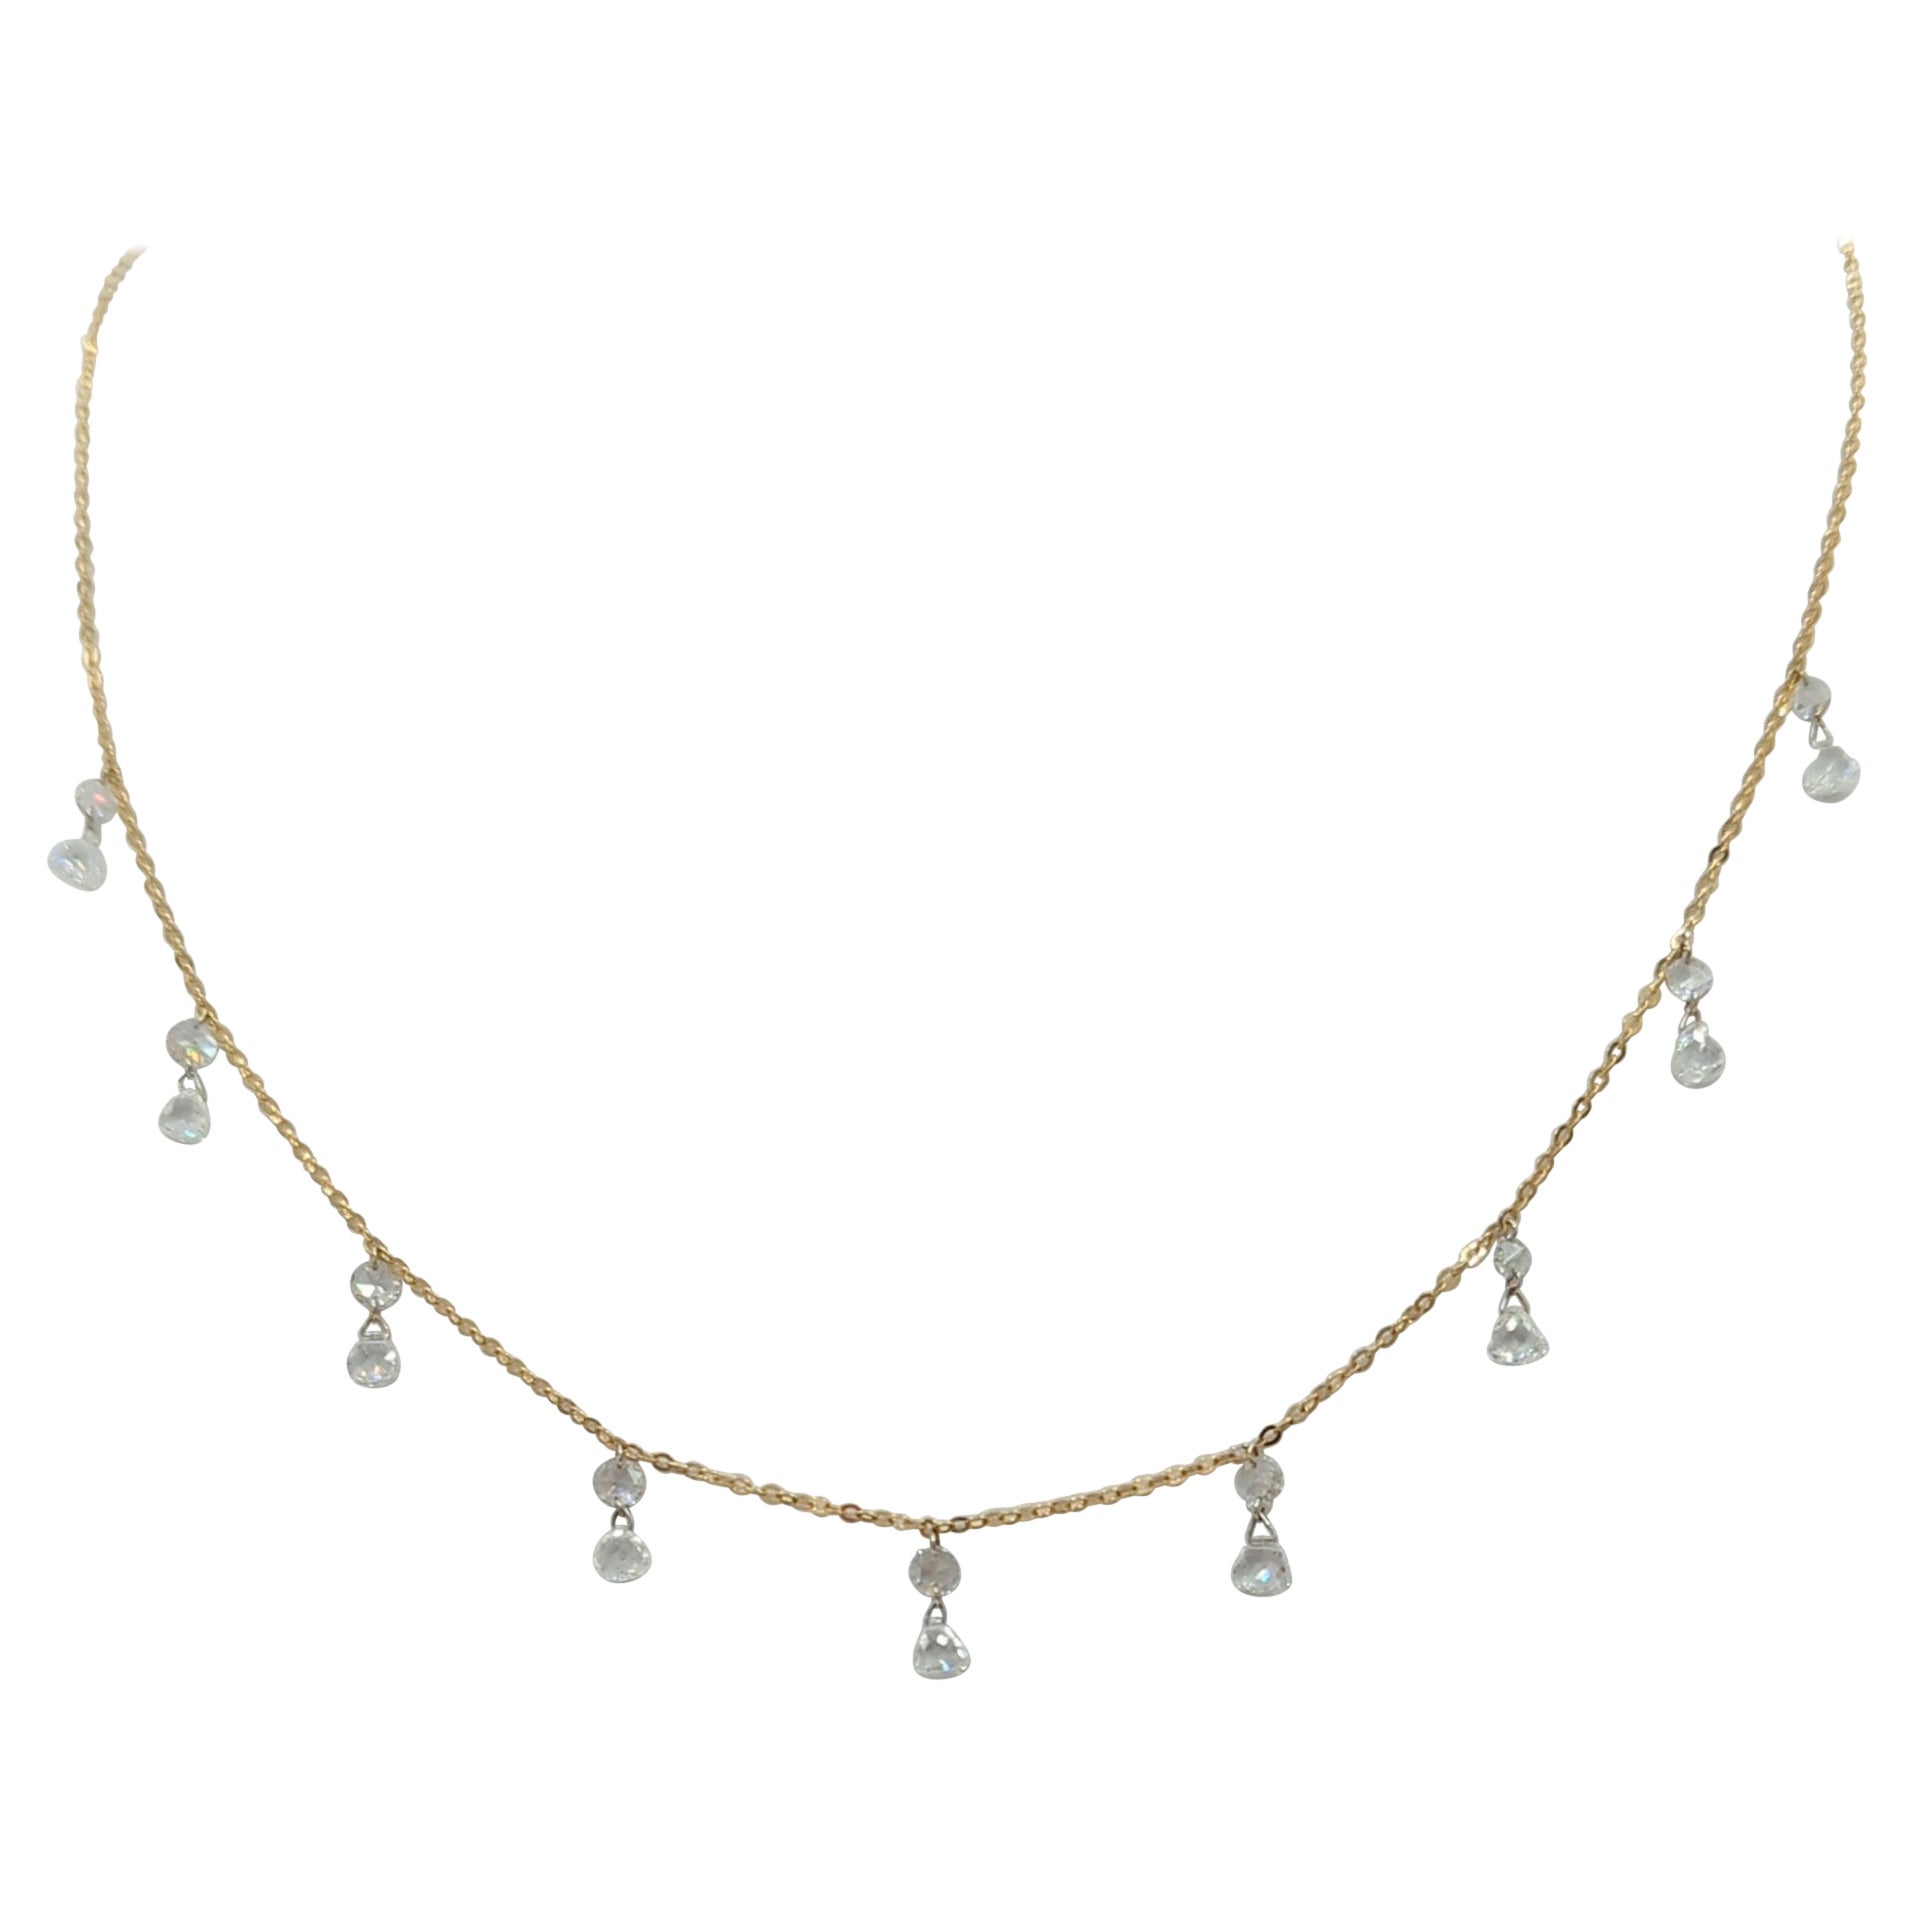 Halskette mit weißem Diamanten im Rosenschliff aus 18 Karat Gelbgold